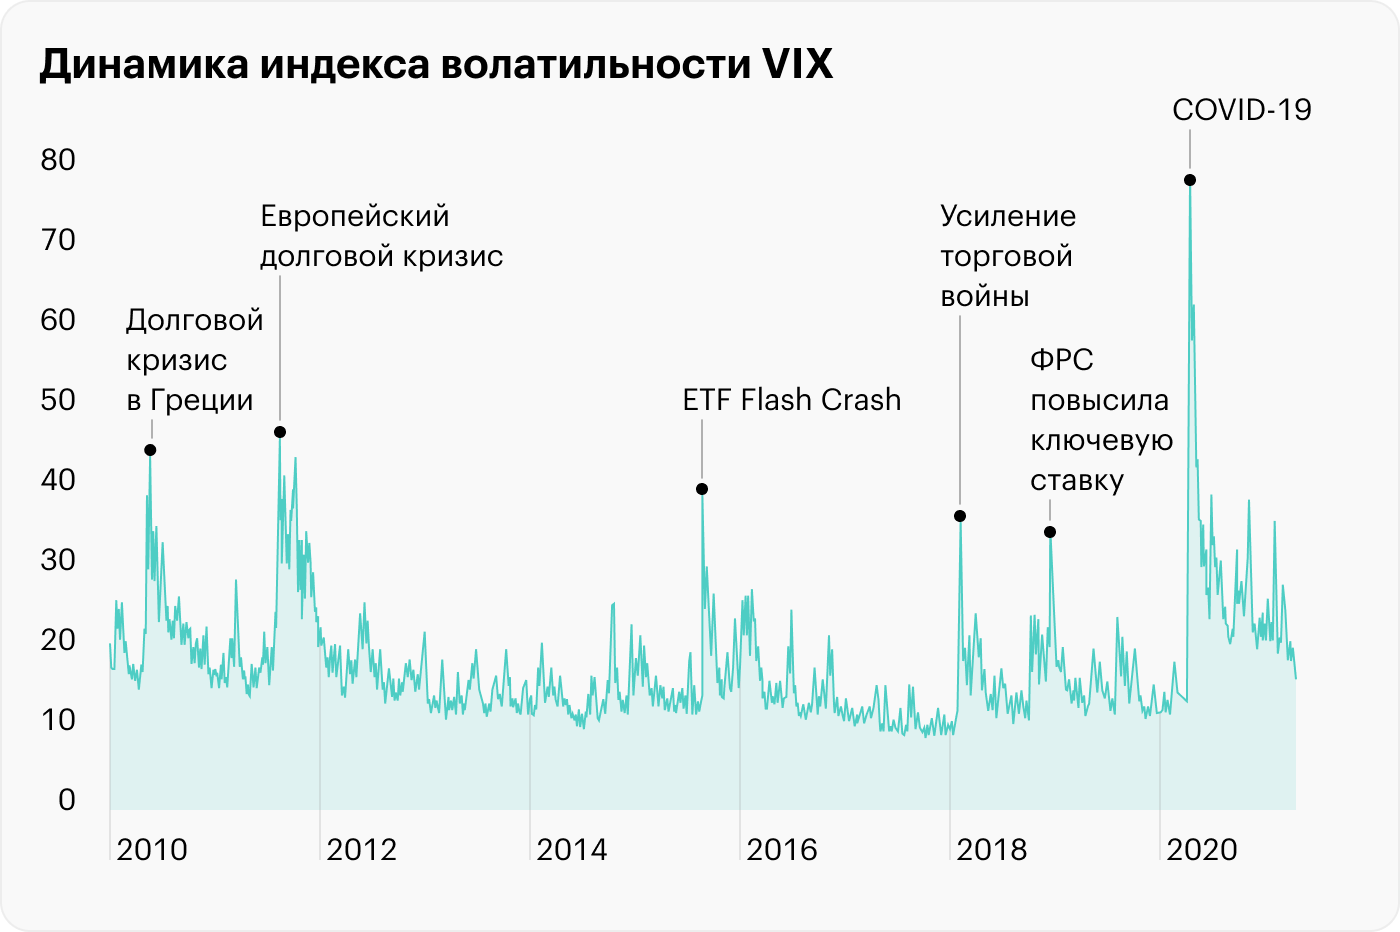 VIX достигает пиков во время макроэкономических и геополитических потрясений, когда рынки падают. Например, в марте 2020 года из⁠-⁠за коронавируса мировые фондовые рынки упали и VIX достиг максимальных значений с 2010 года